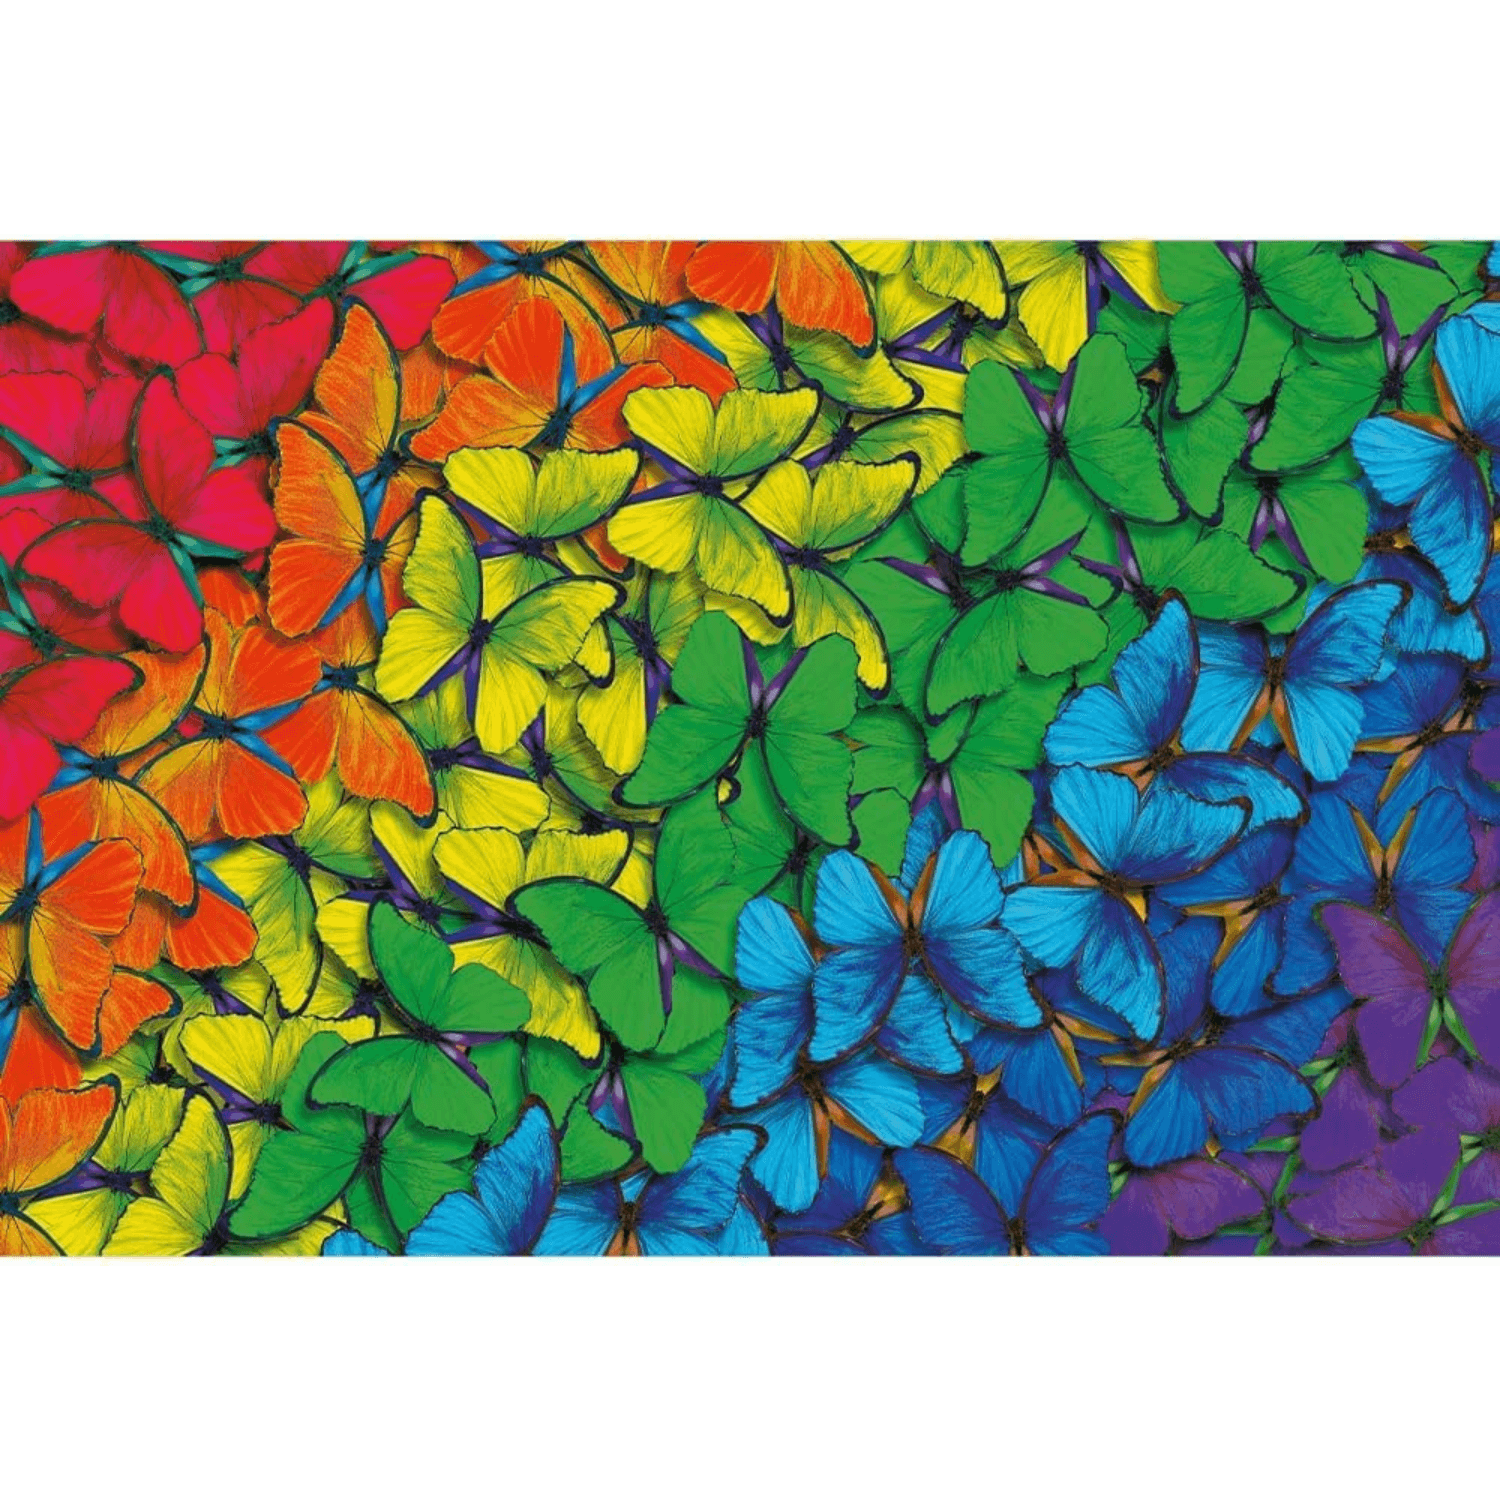 Regenbogen Schmetterlinge | Holz Puzzle 500+1-Holzpuzzle-TREFL--